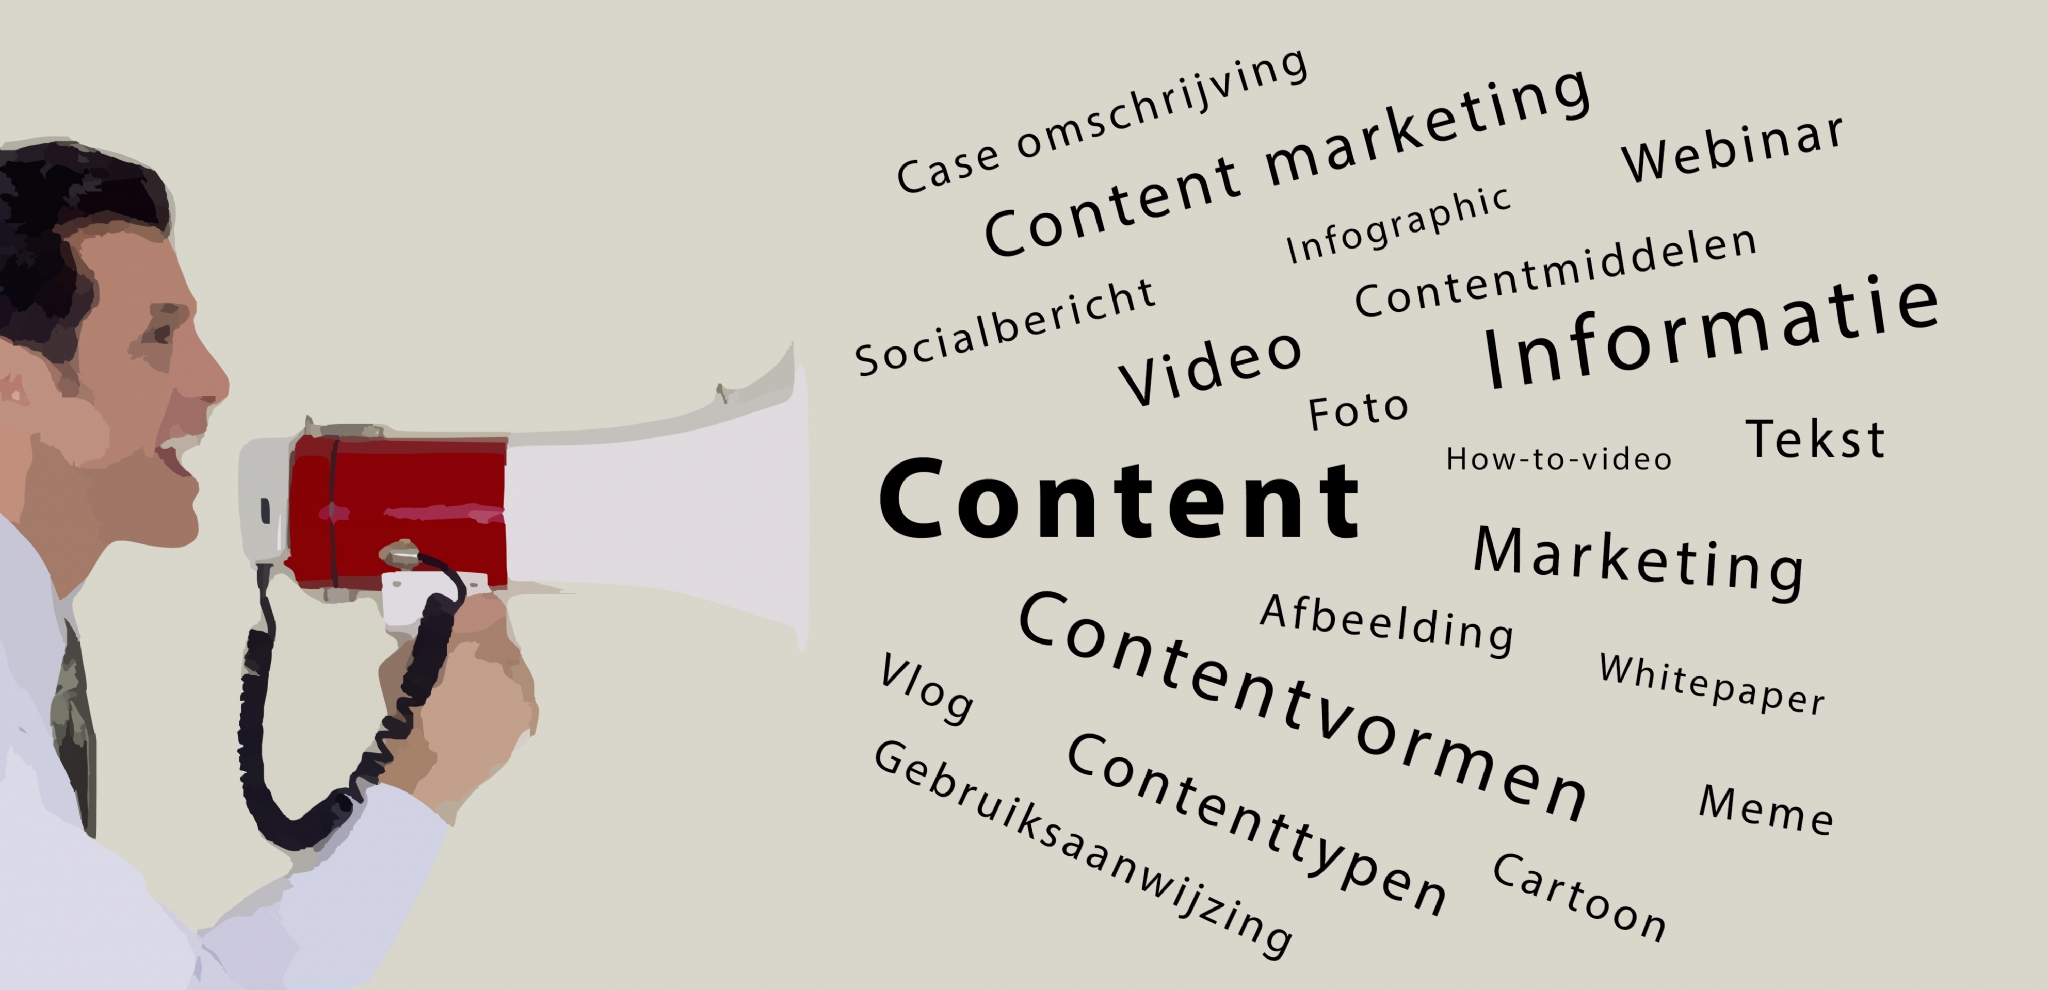 Content voor beginners | Contenttypen, Contentvormen & Contentmiddelen